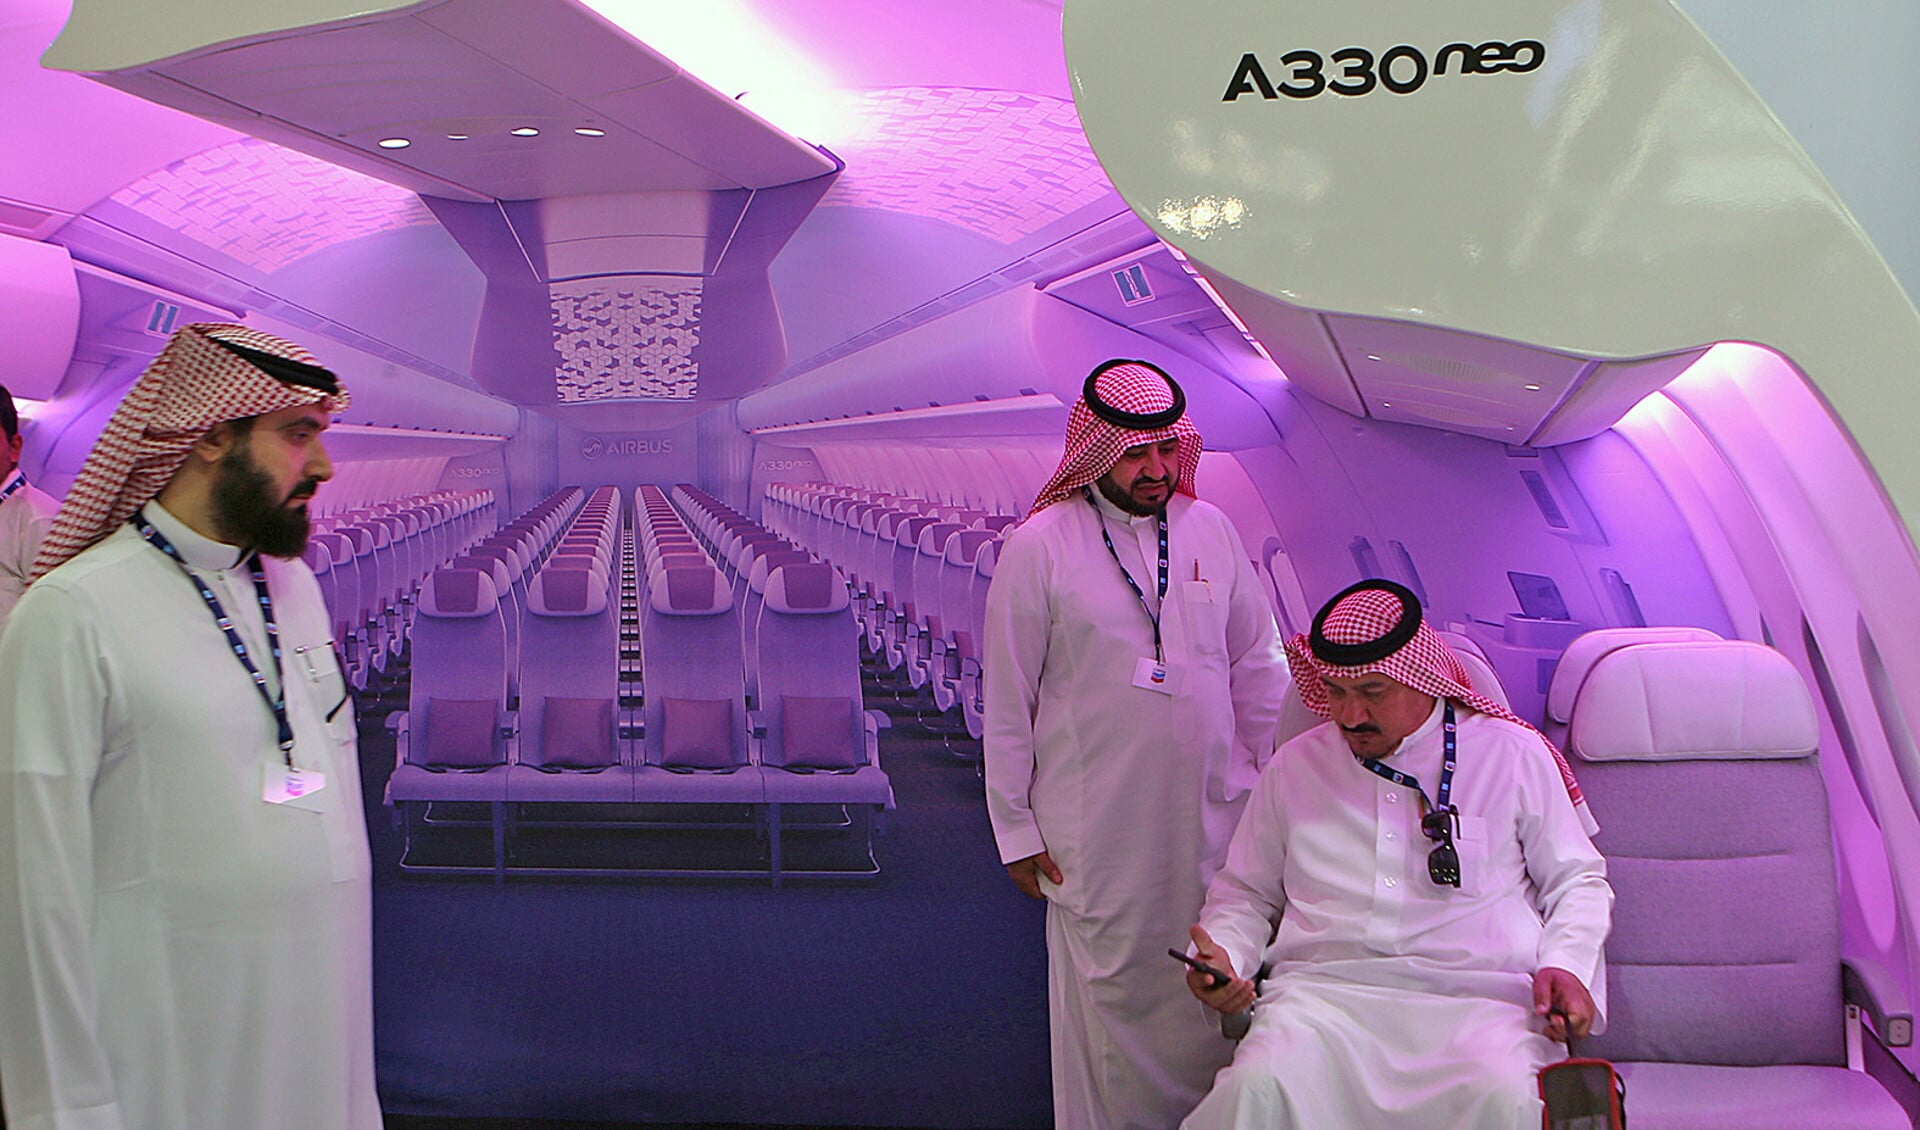 Bezoekers van de luchtvaartshow in Dubai kijken hoe een Airbus 330 zit.